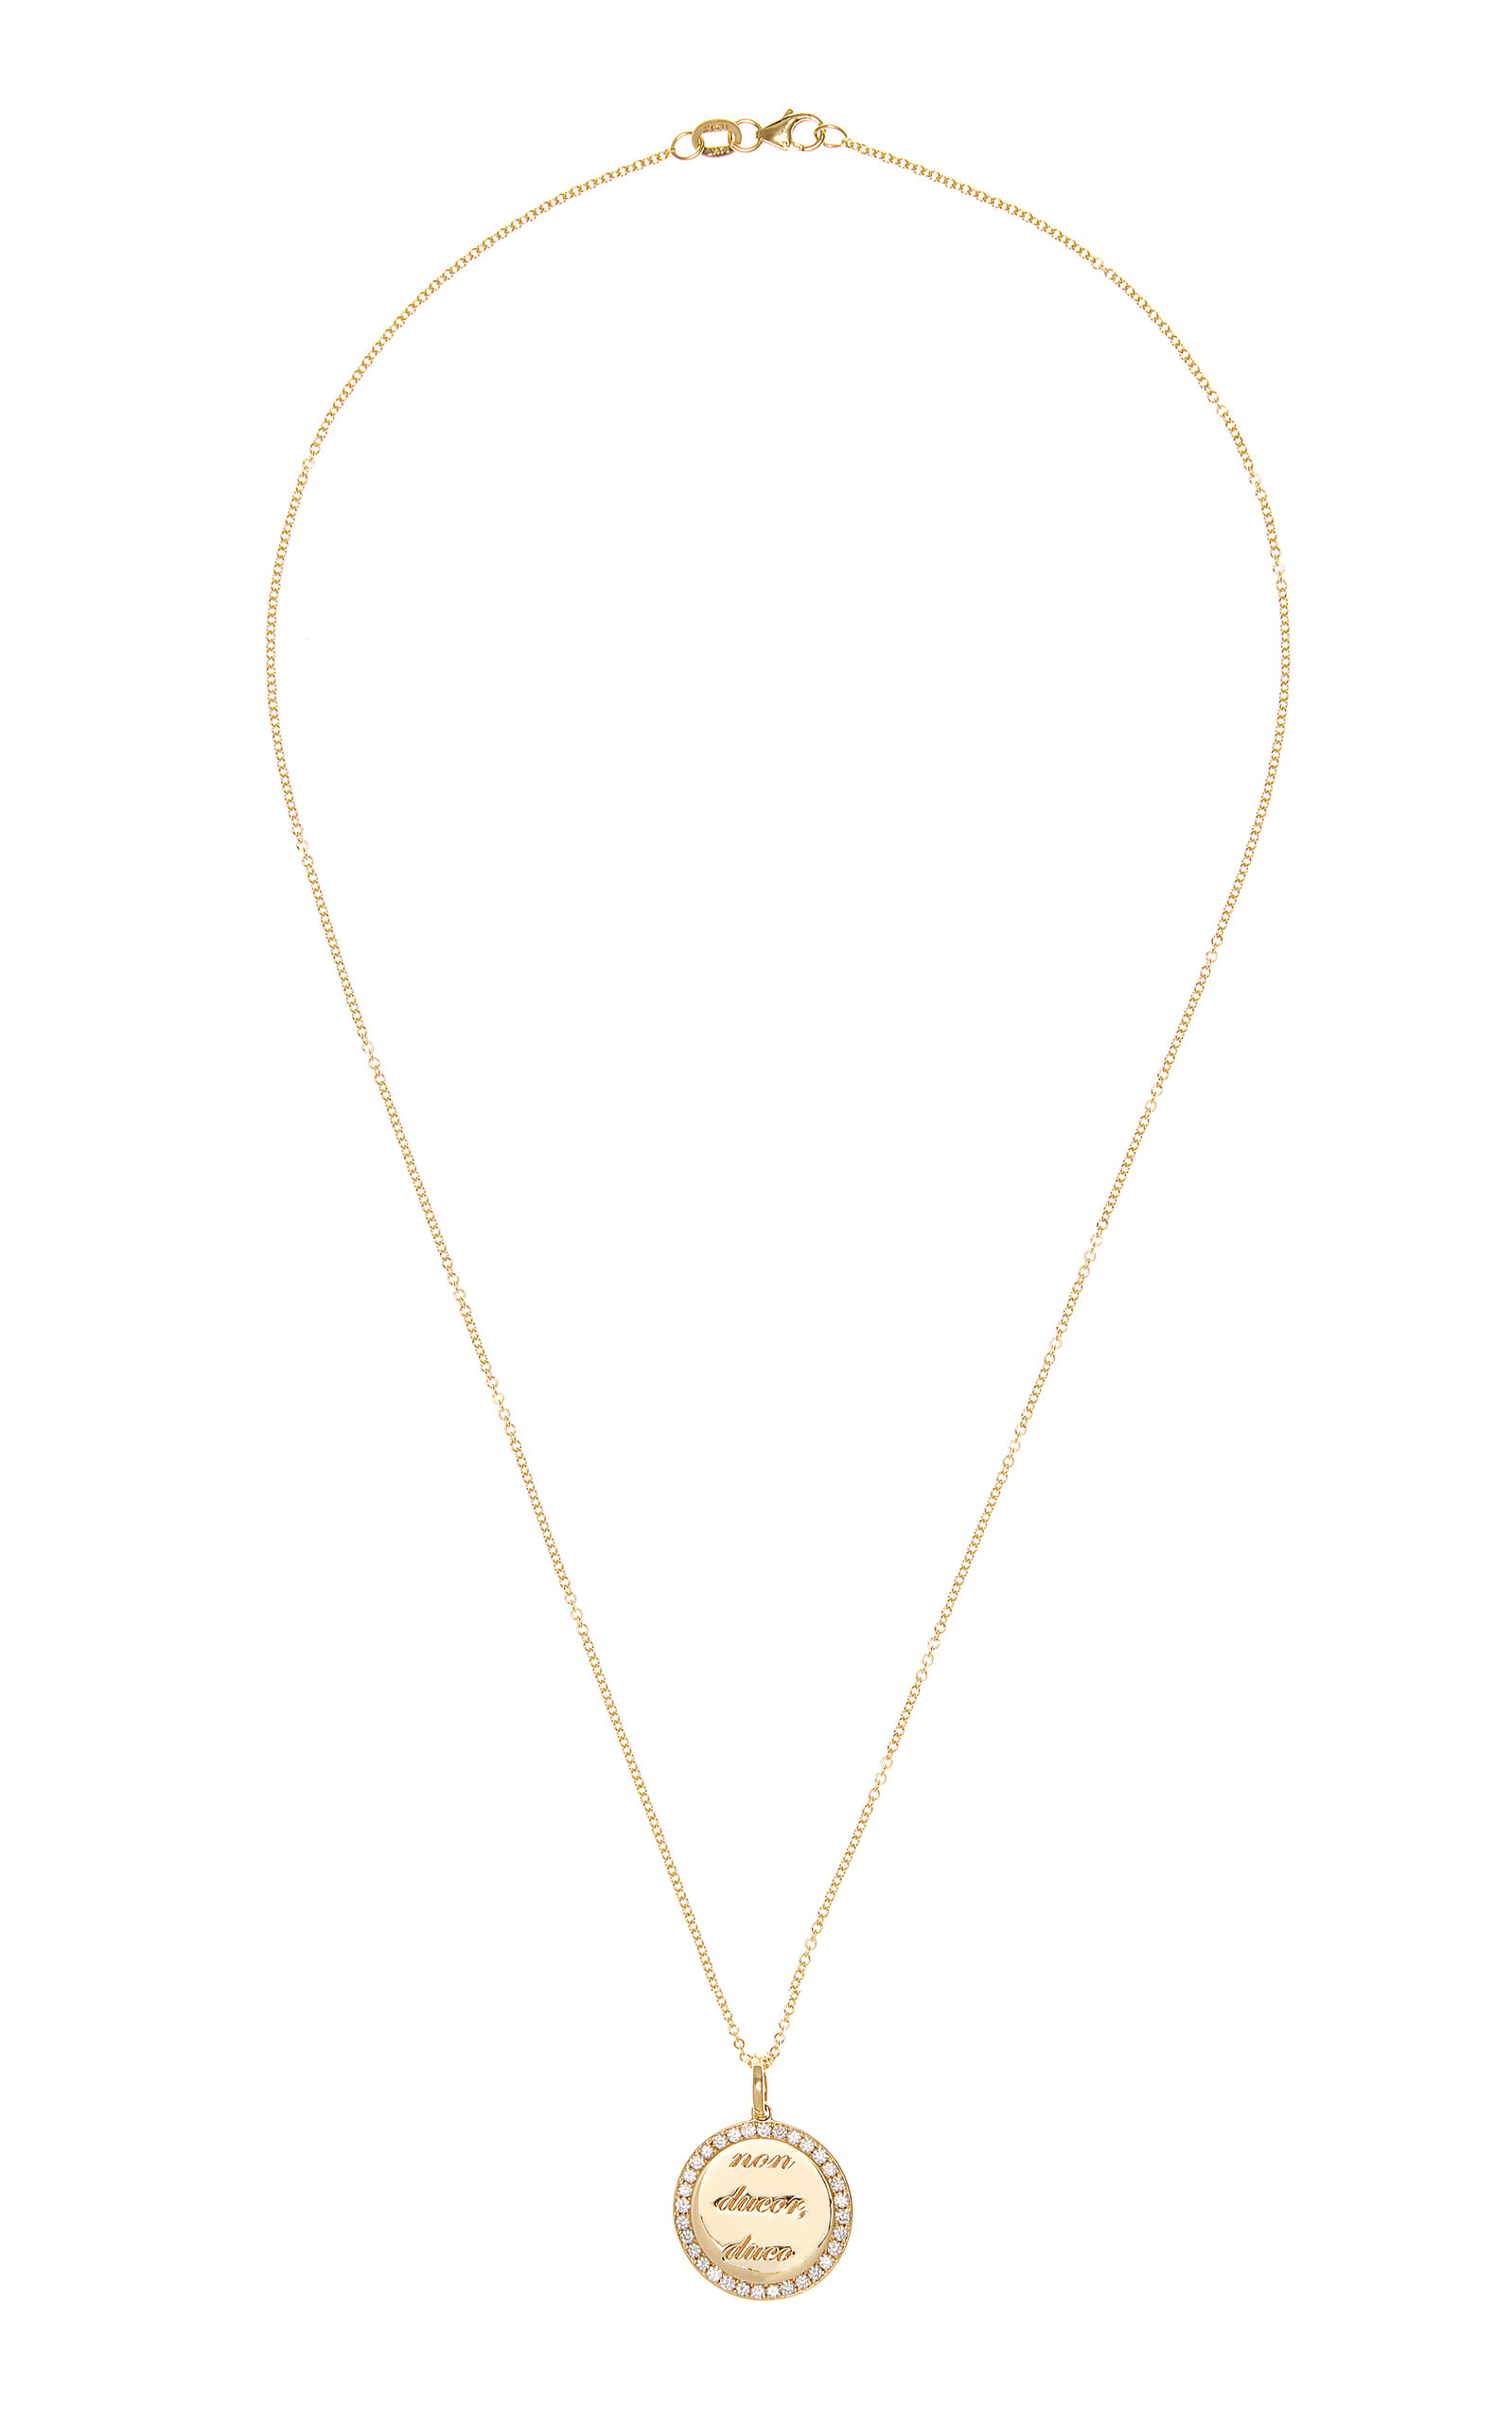 Non Ducor Duco 14K Yellow Gold Diamond Necklace